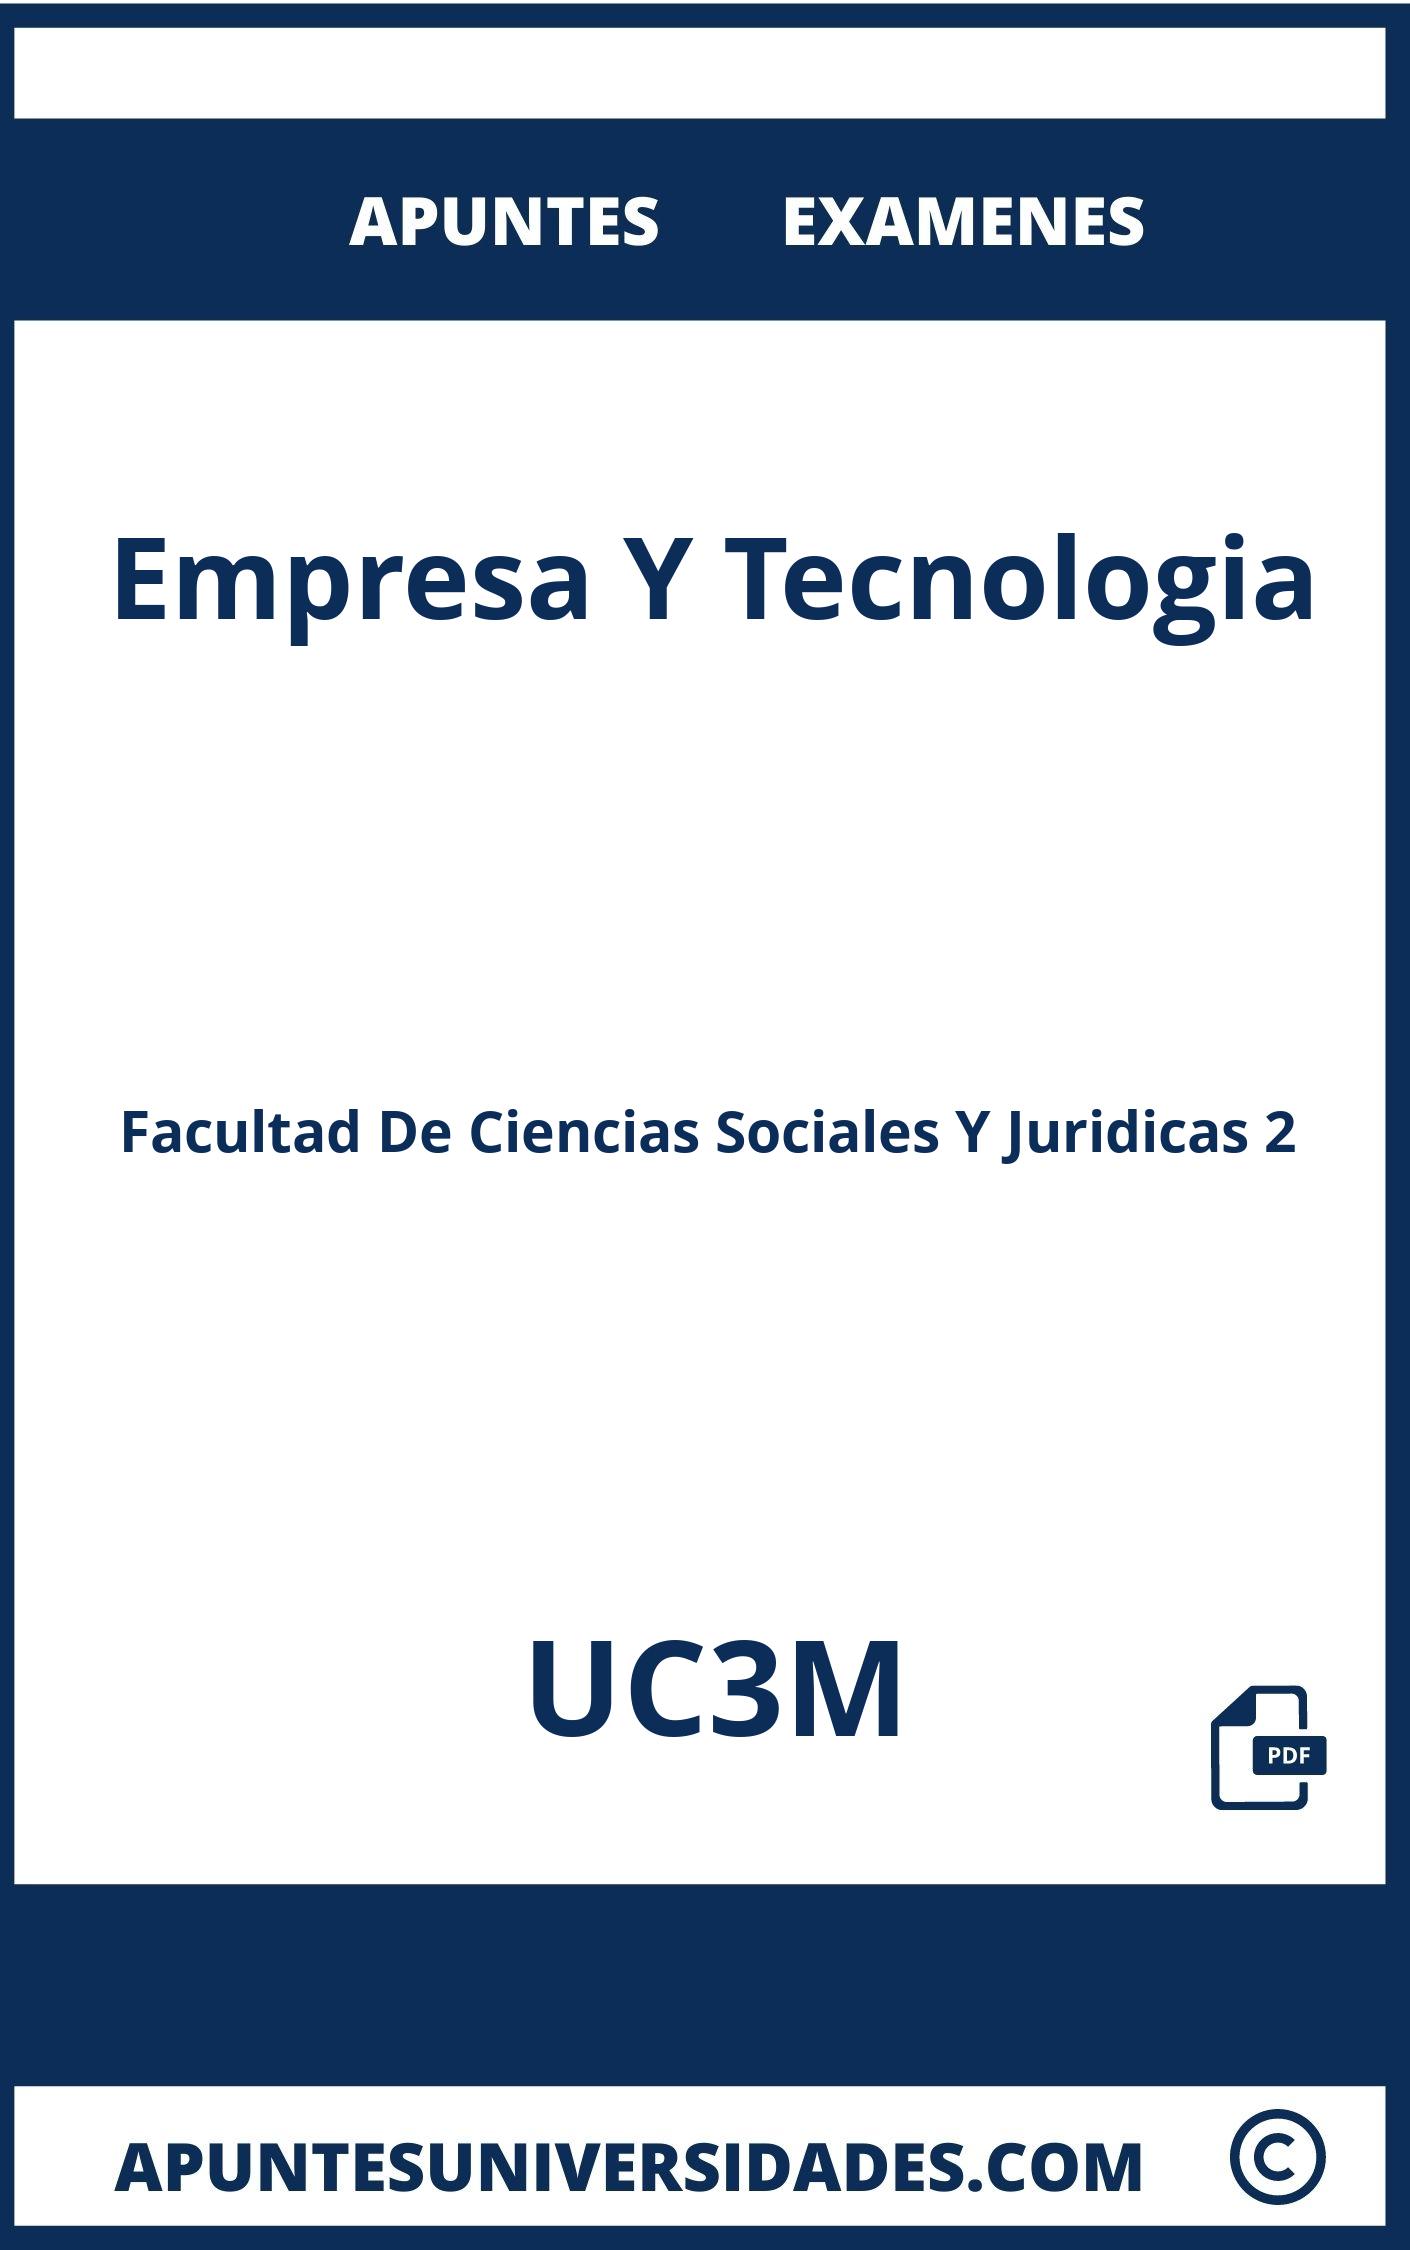 Examenes y Apuntes Empresa Y Tecnologia UC3M